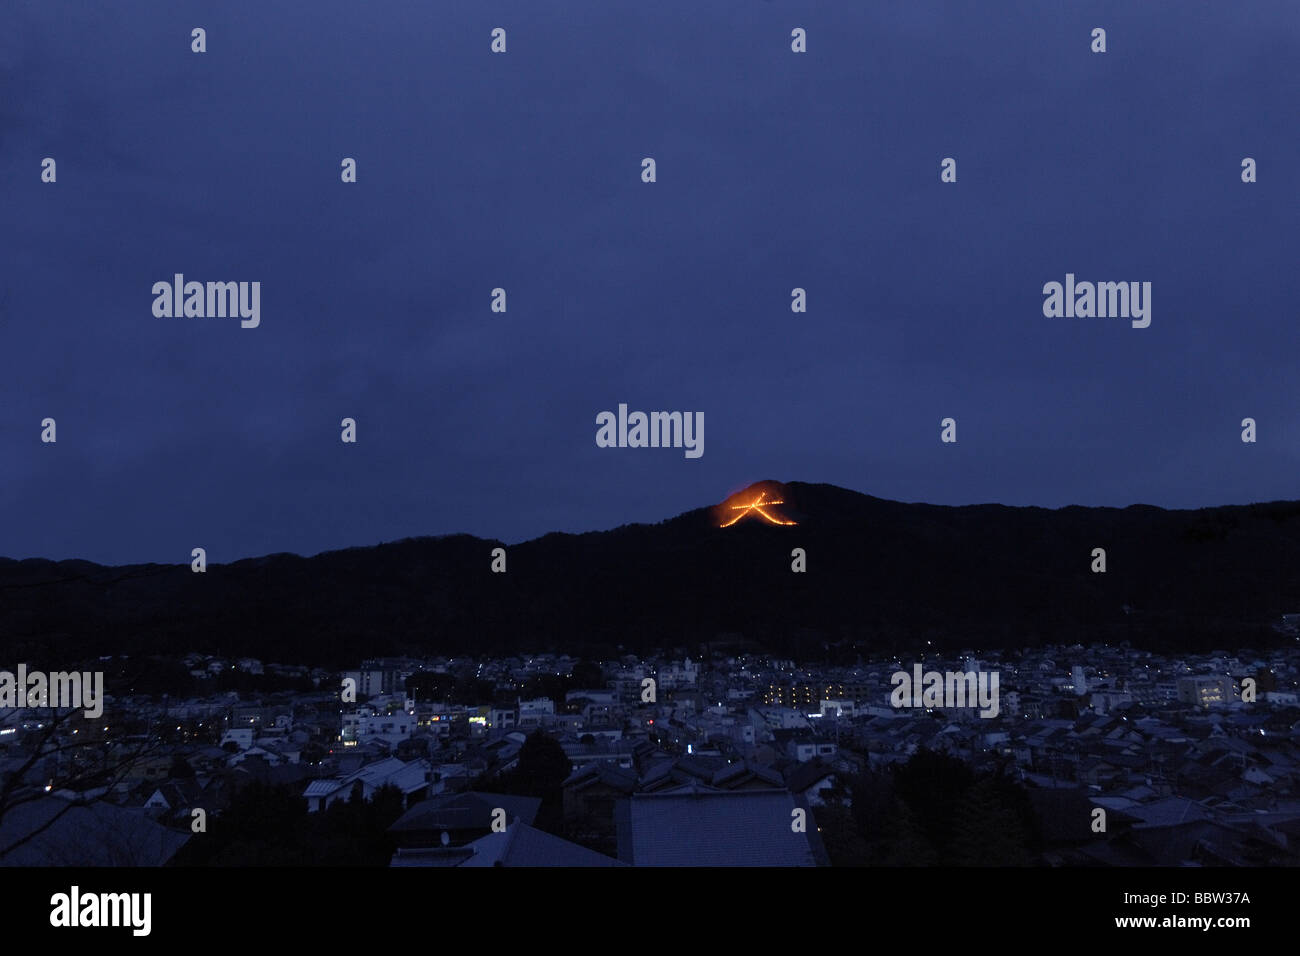 Signo de fuego controlado japonés iluminando una colina Foto de stock